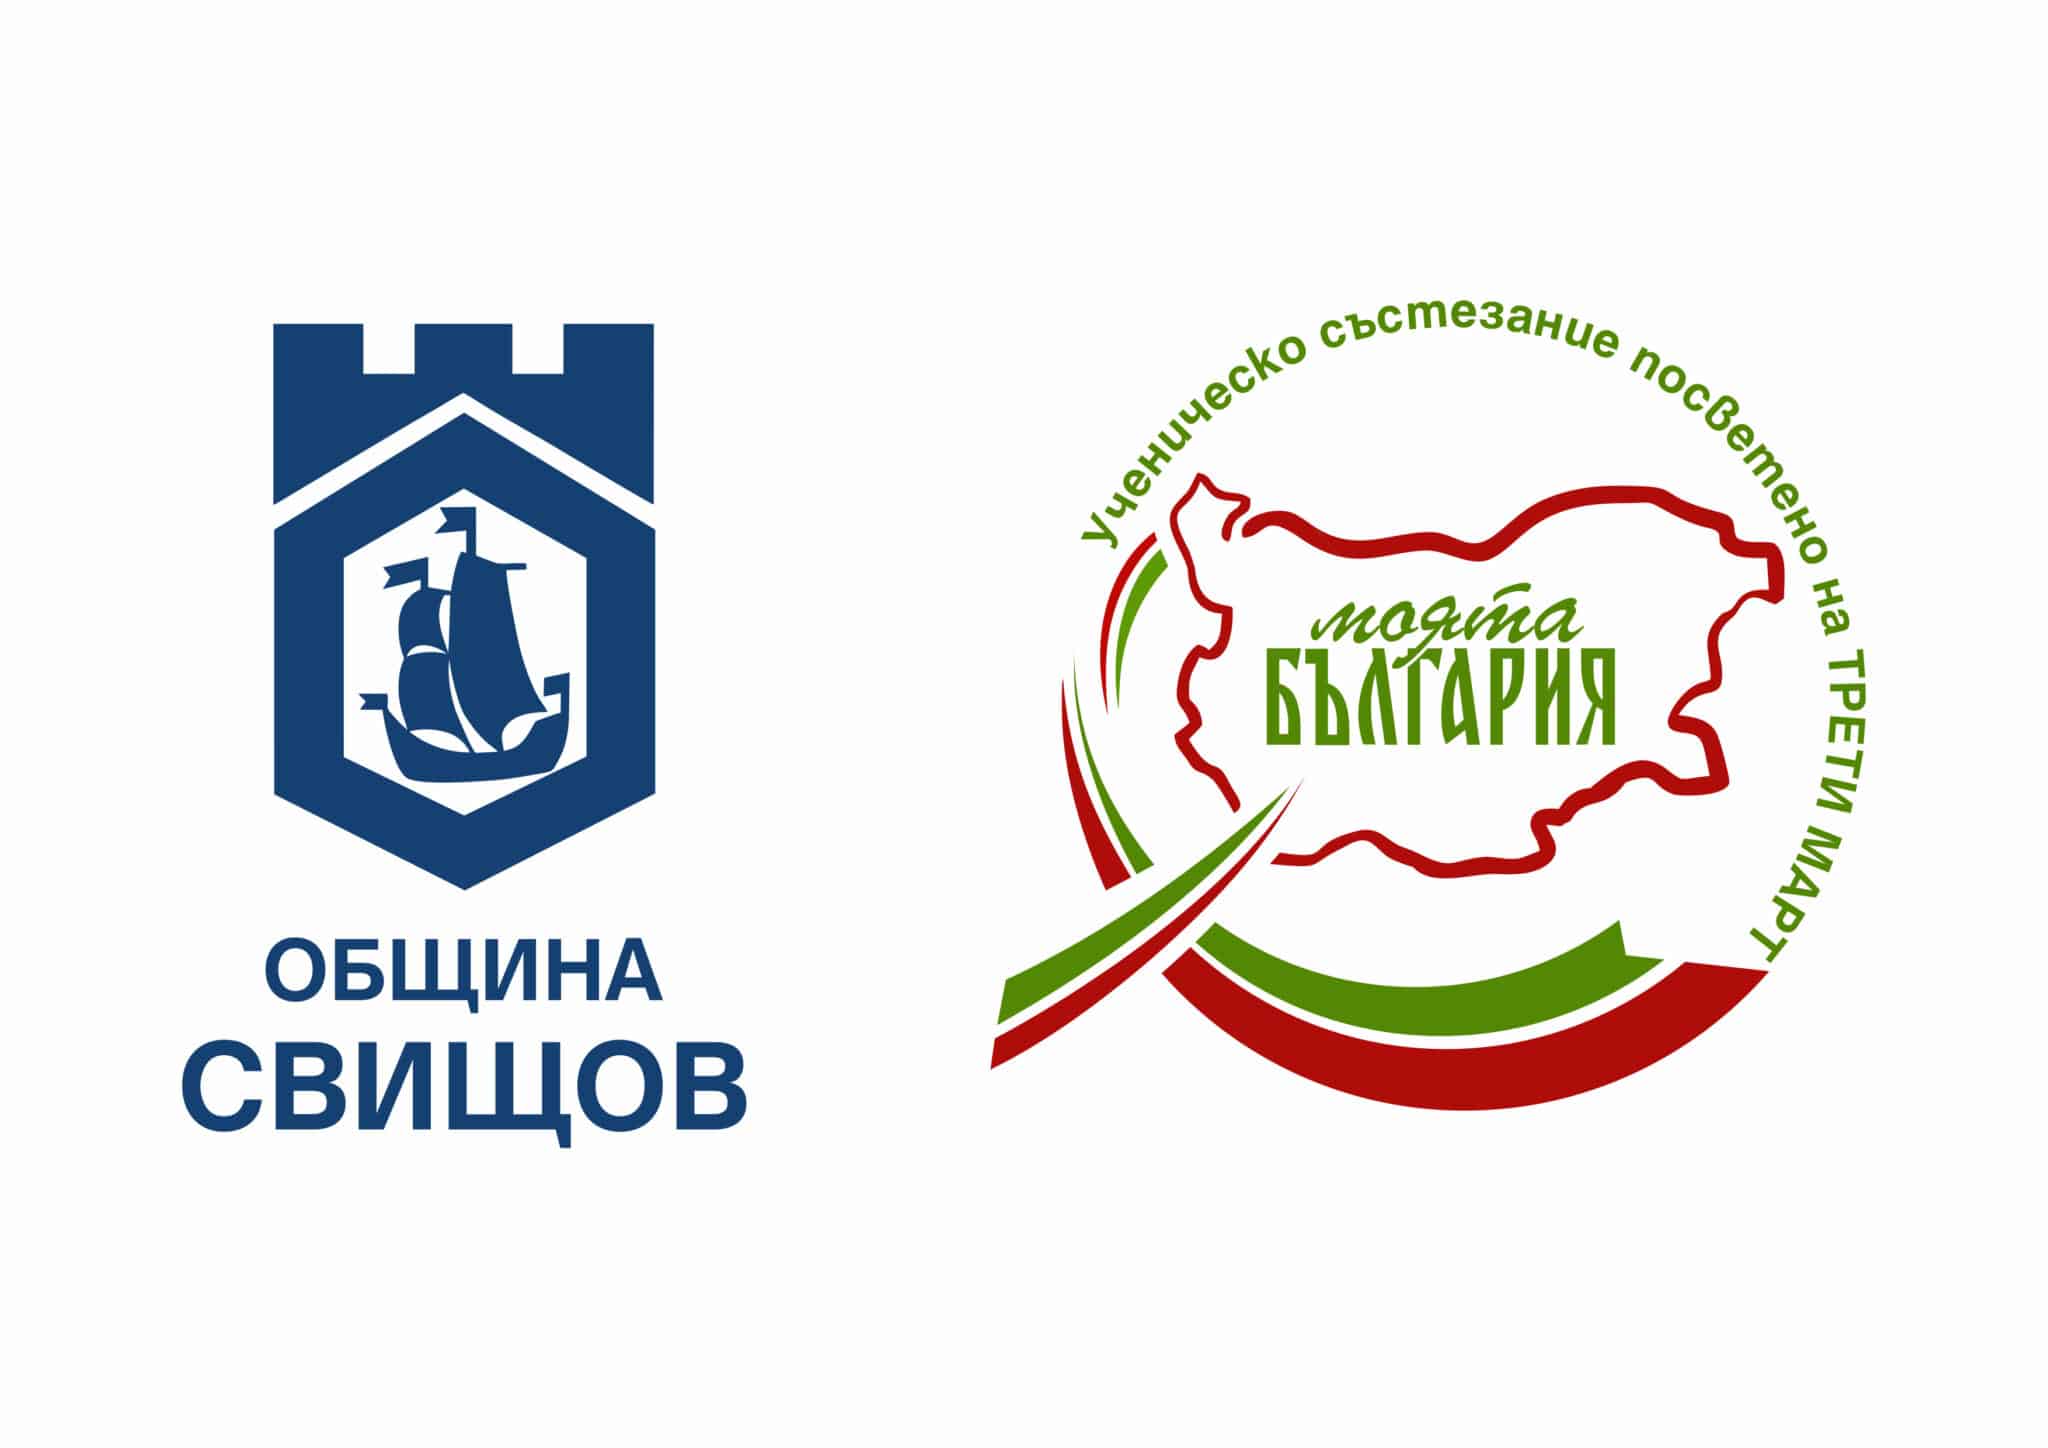 В Свищов ще се проведе ученическо състезание Моята България“, посветено